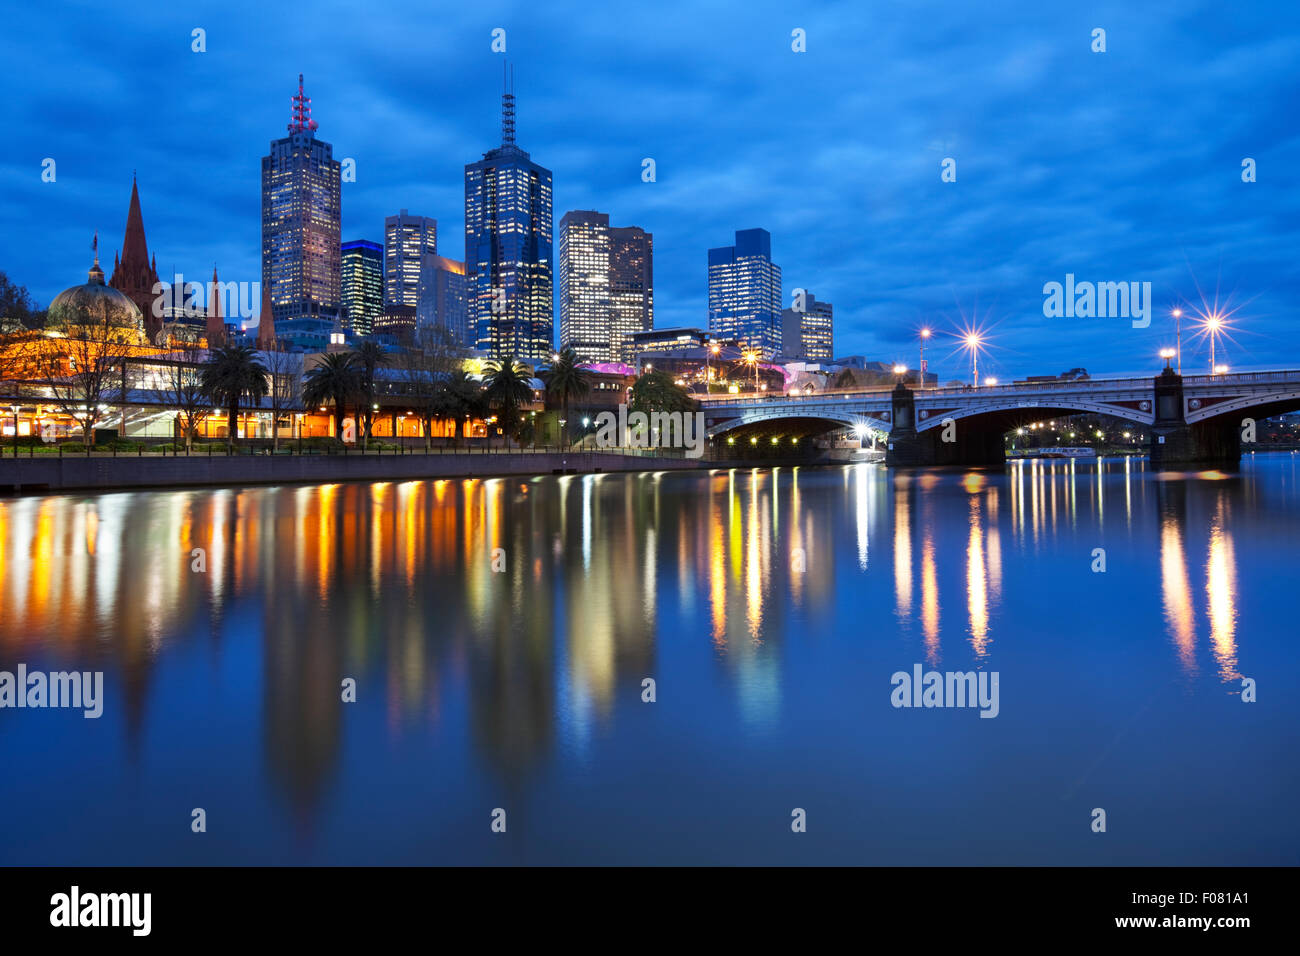 Les toits de Melbourne, en Australie avec la gare de Flinders Street et les Princes Bridge de l'autre côté de la rivière Yarra, dans la nuit. Banque D'Images